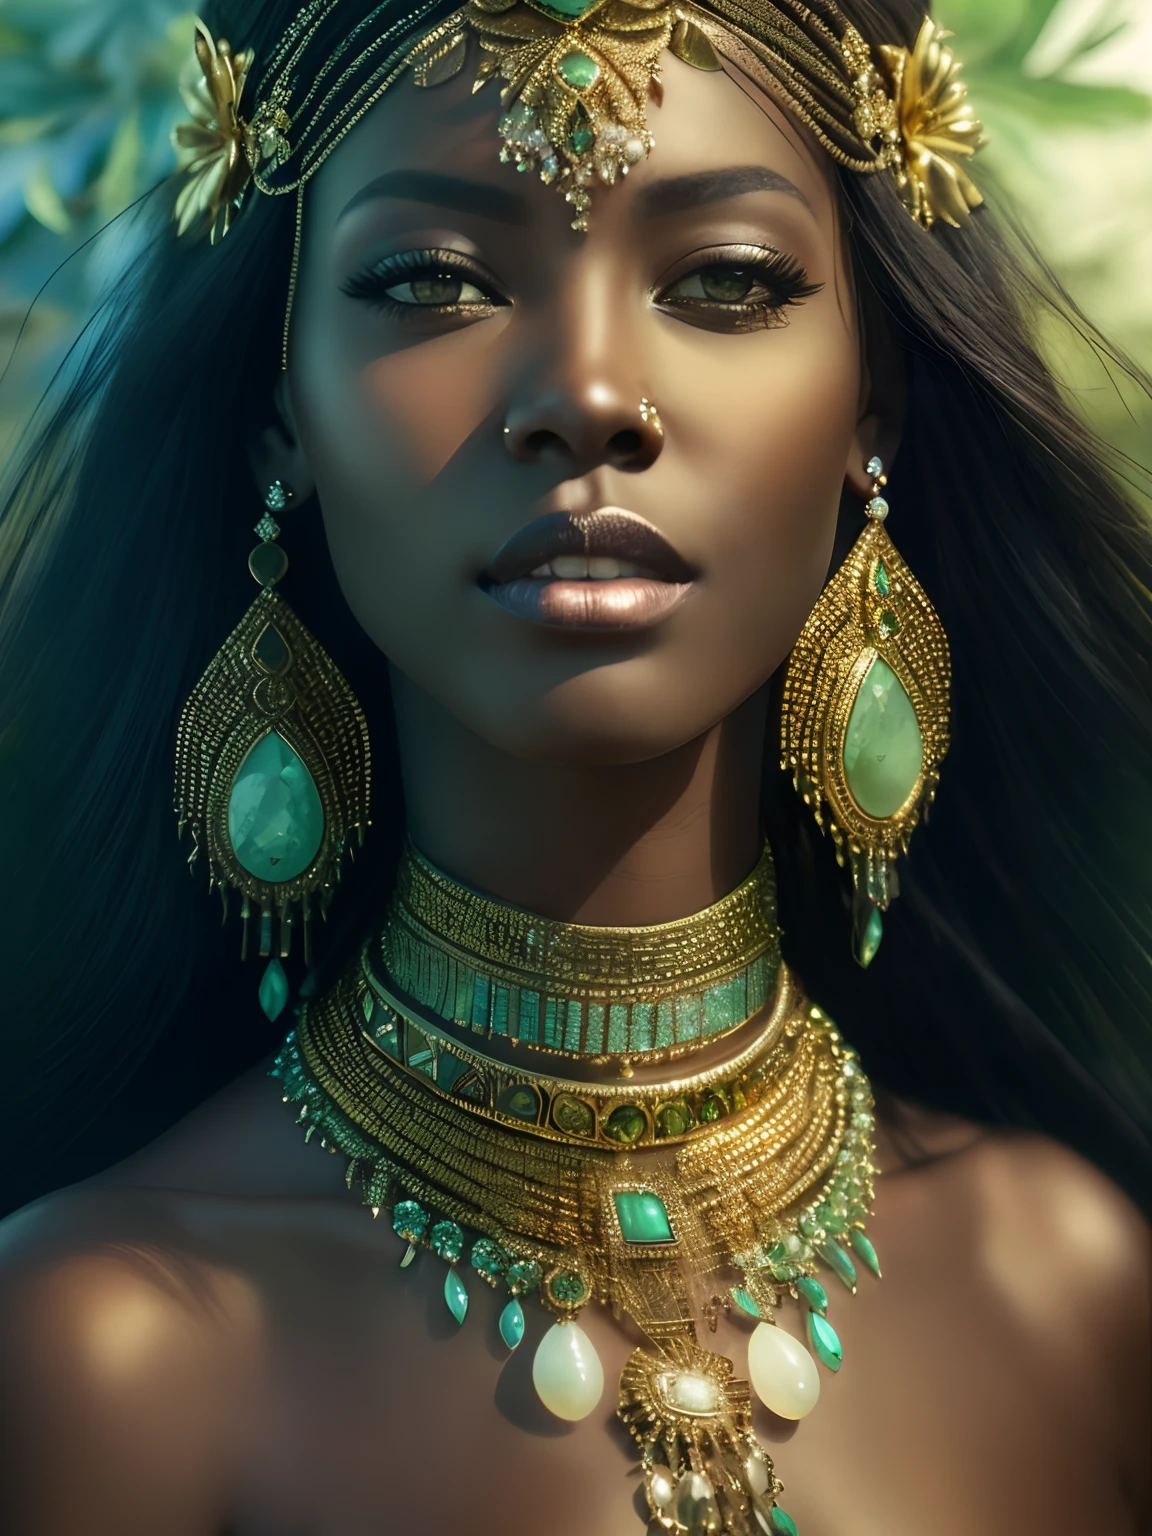 eine Nahaufnahme einer Frau, die eine goldene und grüne Halskette und Ohrringe trägt, stunning afrikanische prinzessin, dark skin female Göttin of love, a stunning portrait of a Göttin, black afrikanische prinzessin, hinreißende Frau, Göttin. extrem hoher Detailreichtum, portrait of a beautiful Göttin, Göttin close-up portrait, eine wunderschöne Fantasiekaiserin, afrikanische prinzessin, Epos 3D Oshun